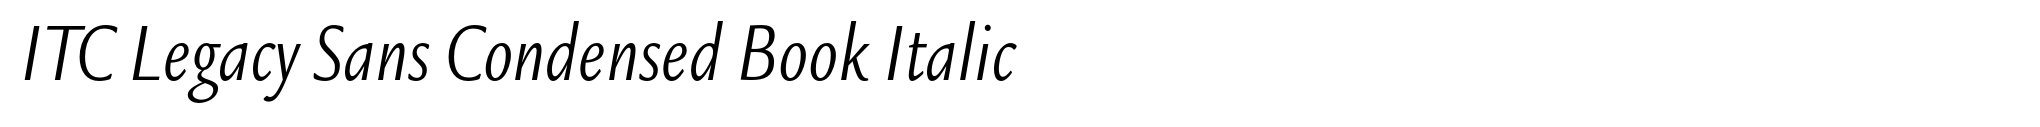 ITC Legacy Sans Condensed Book Italic image